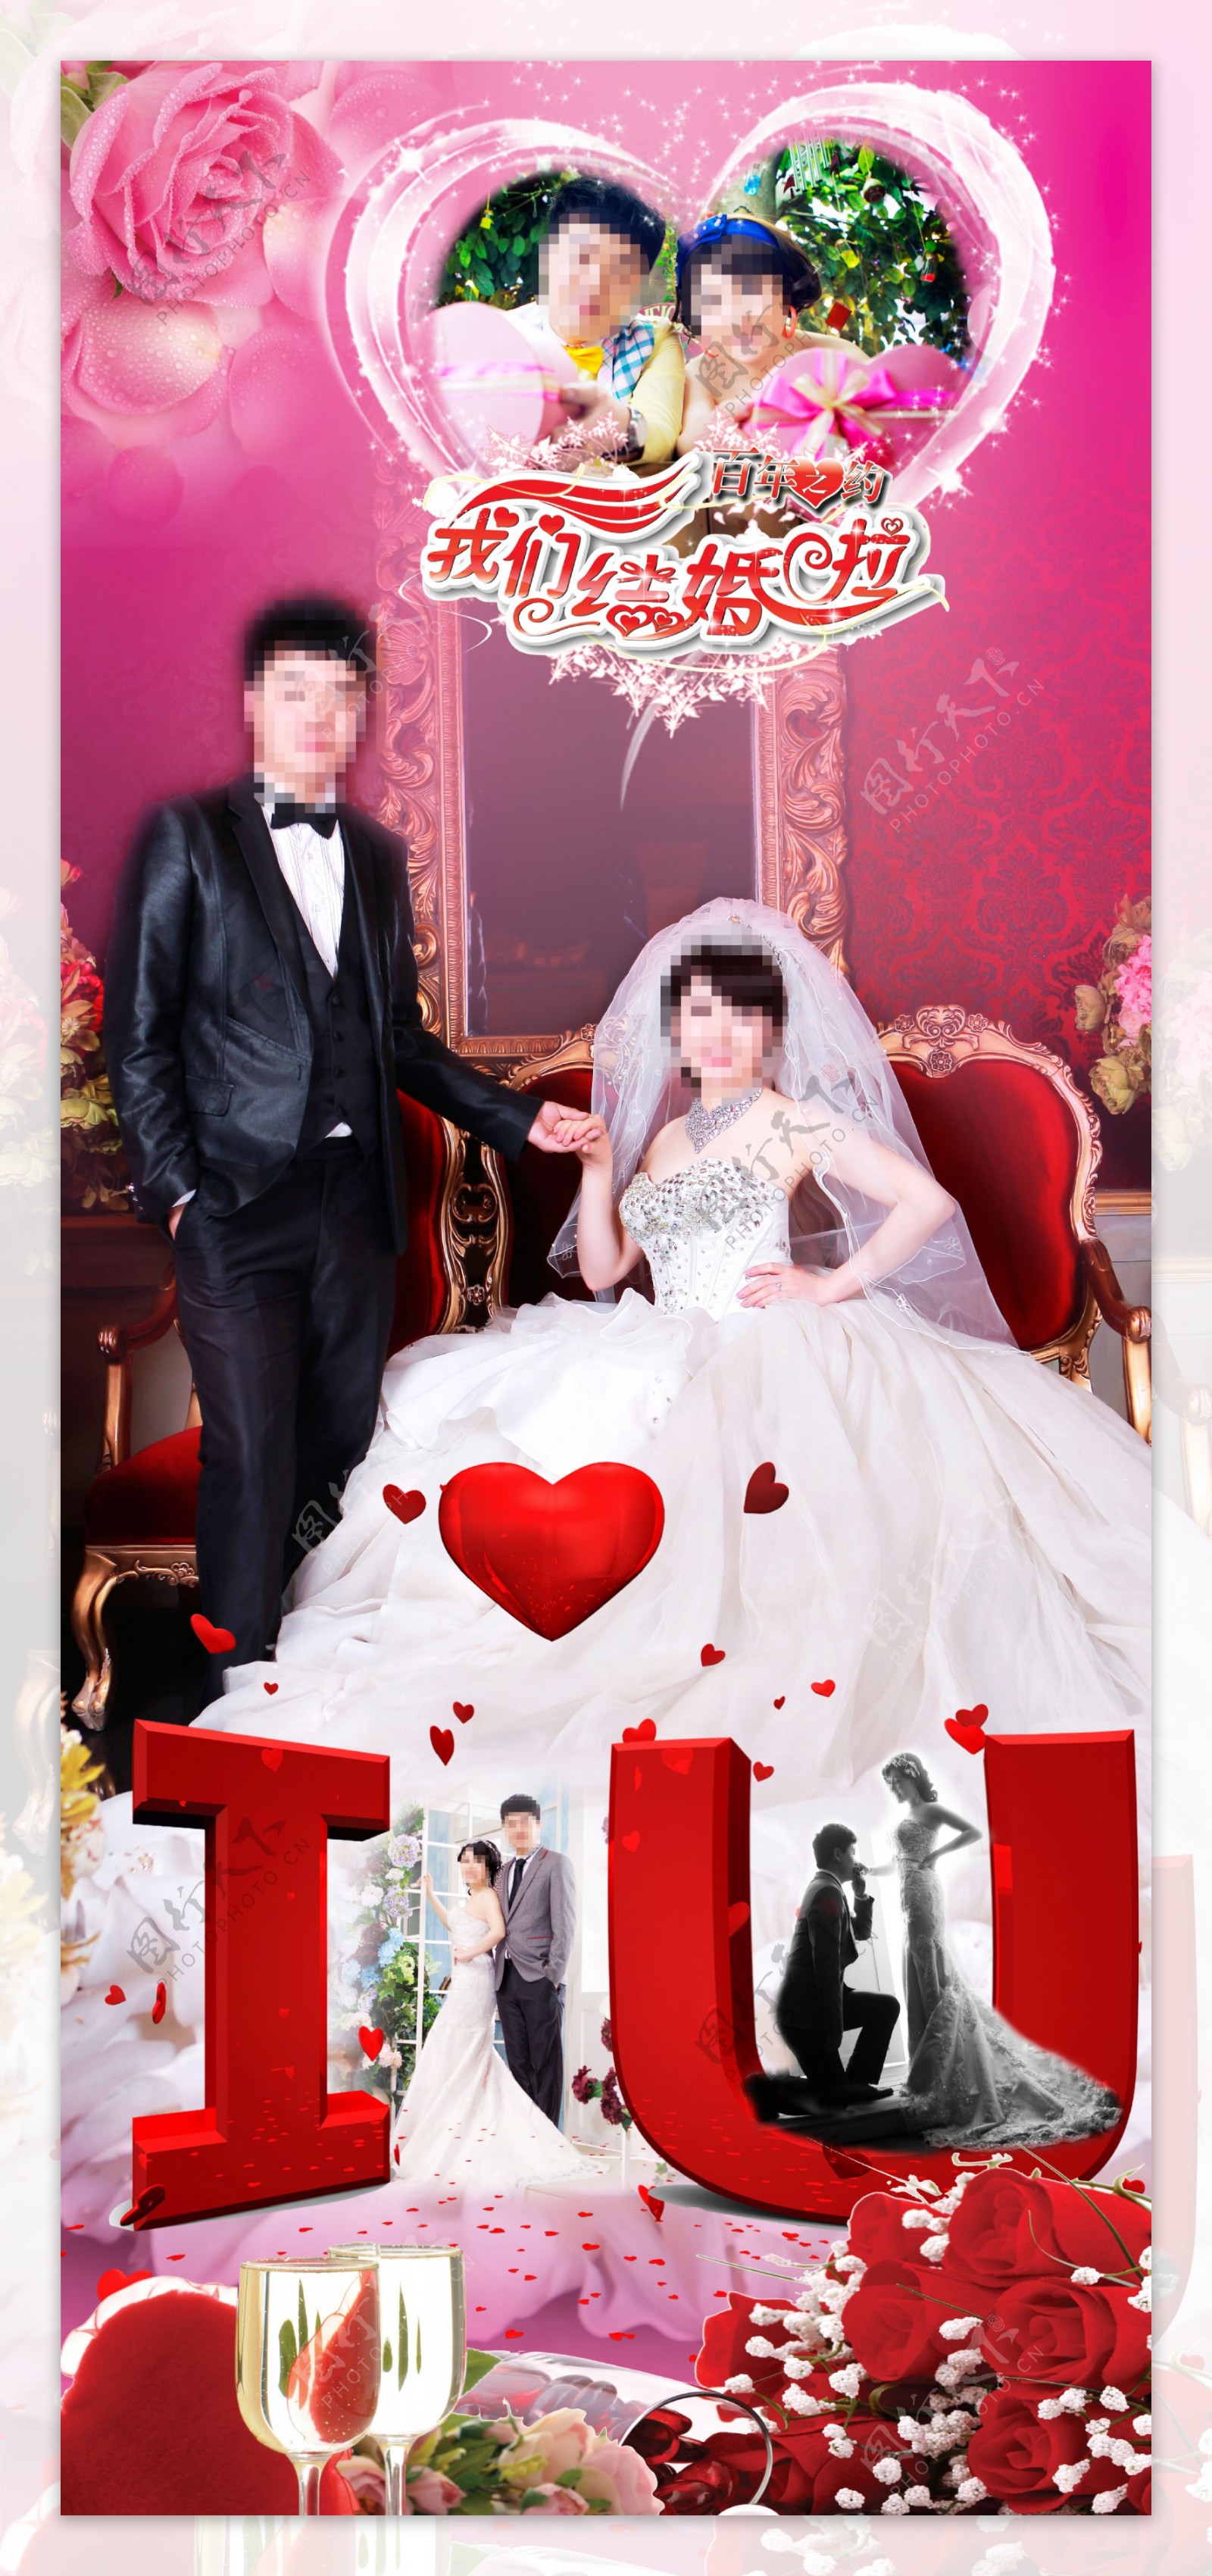 结婚婚宴婚礼婚庆展架背景PSD素材下载